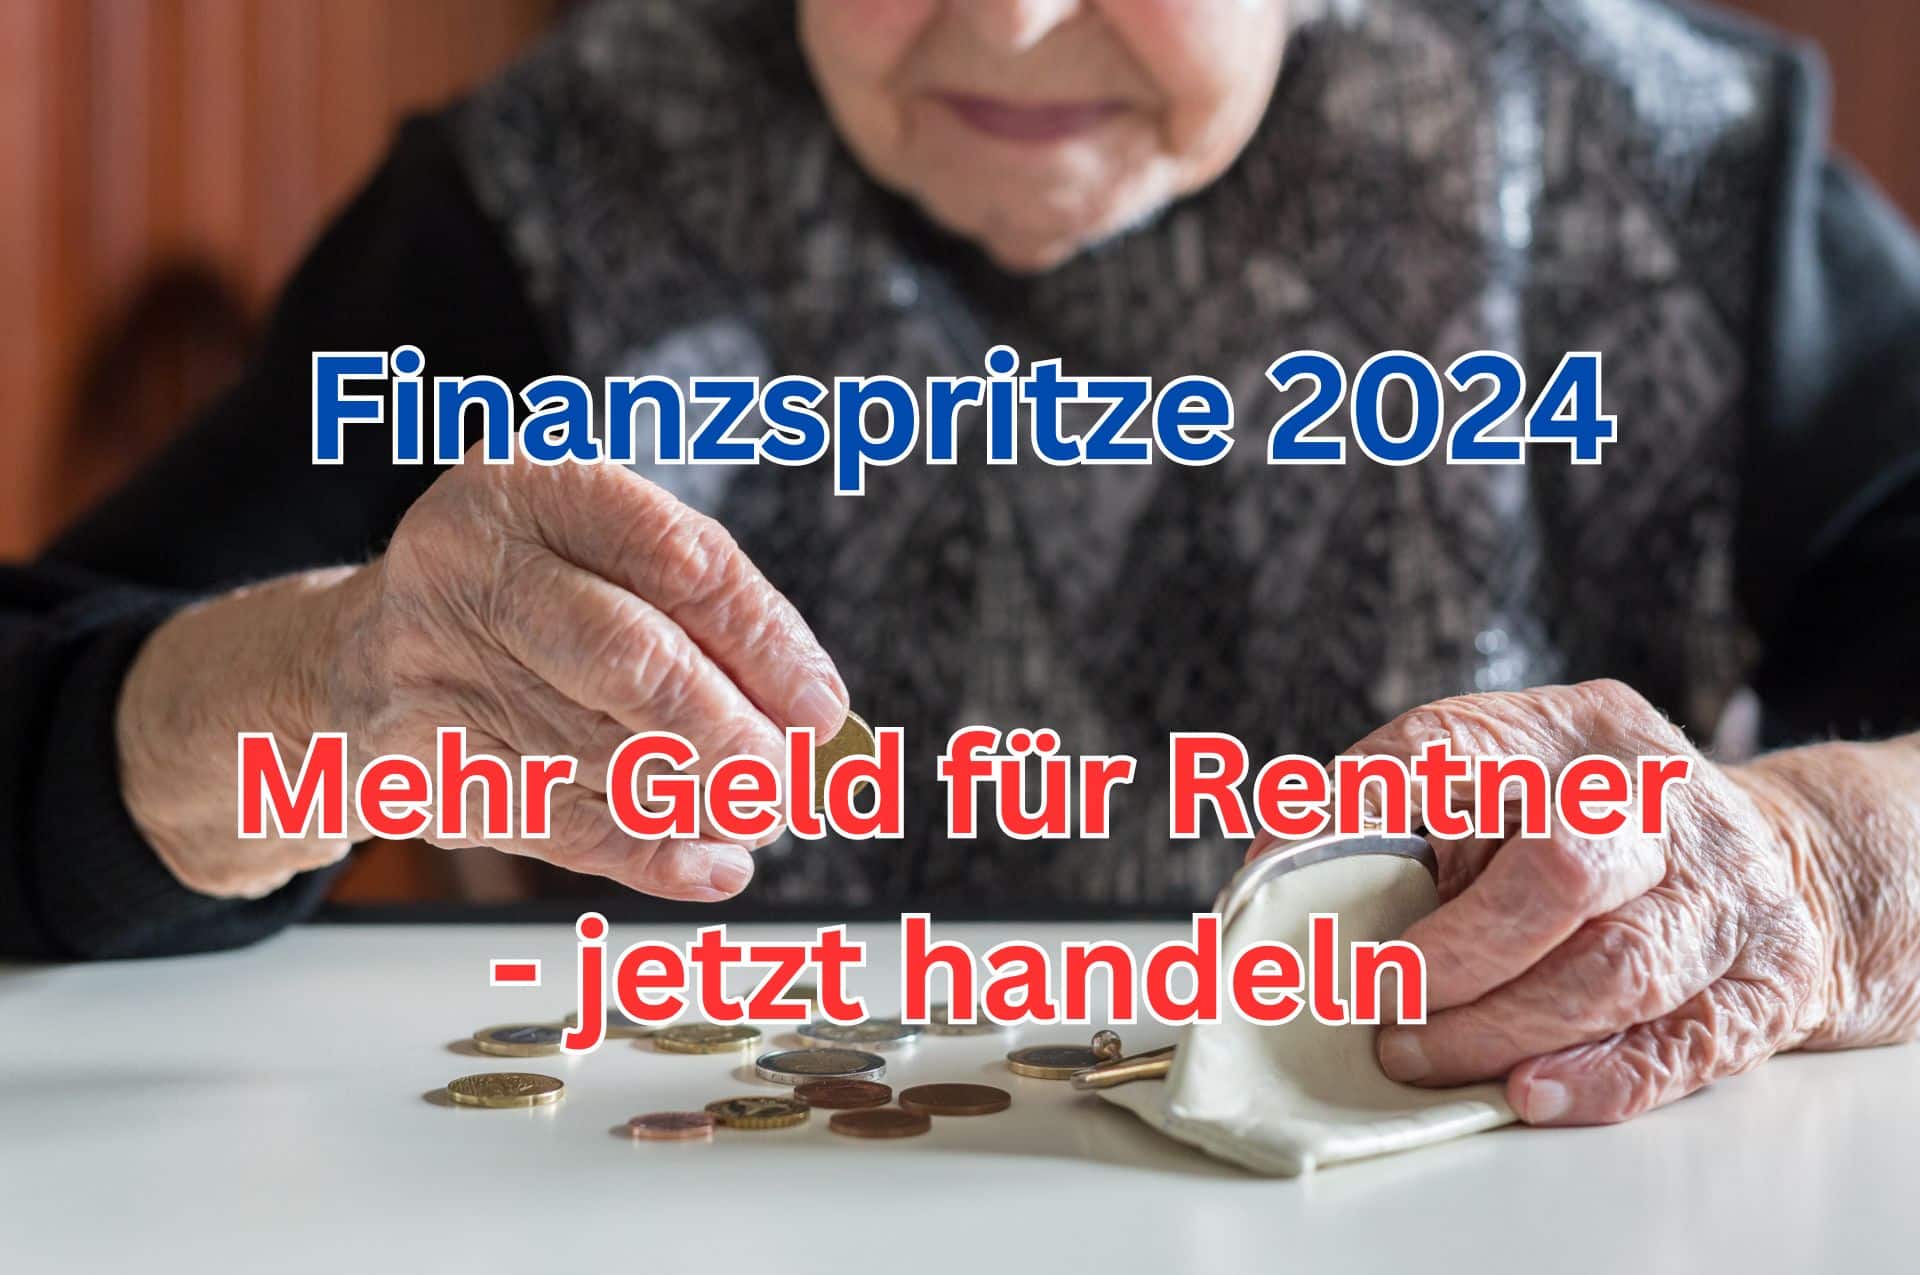 Geld für Rentner: mit einem Minijob 538 Euro mehr pro Monat erhalten.